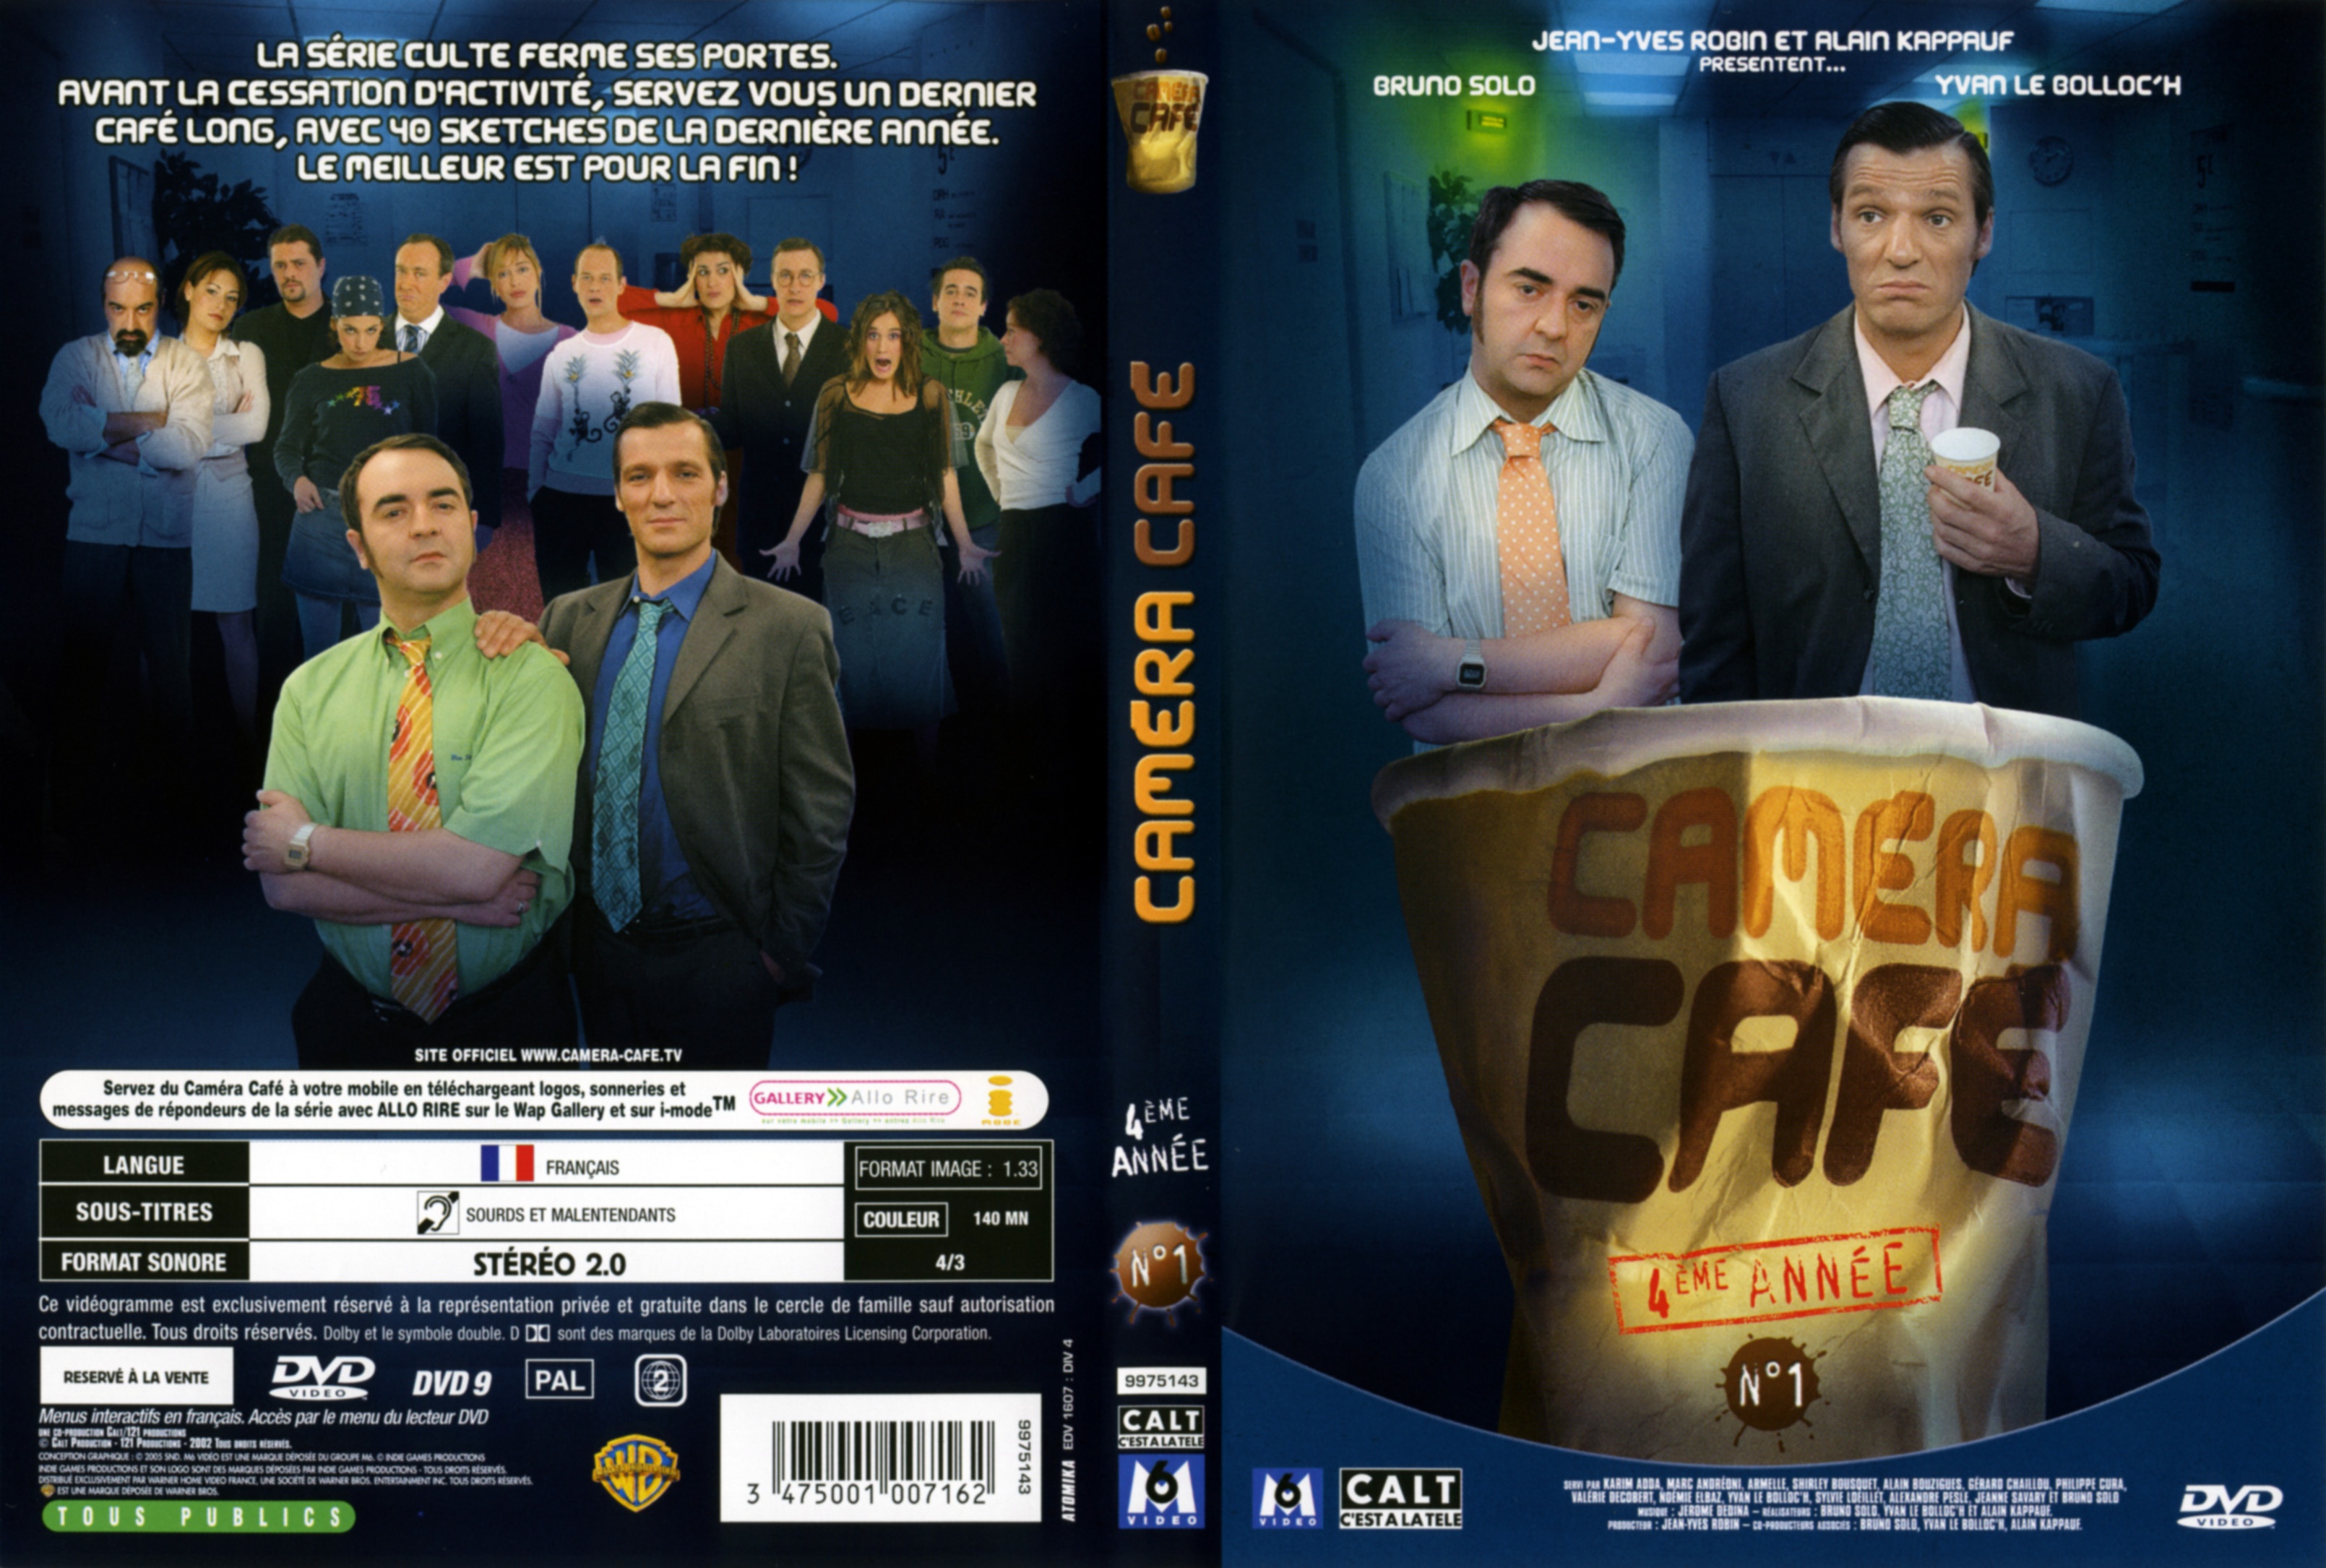 Jaquette DVD Camra caf Saison 4 vol 1